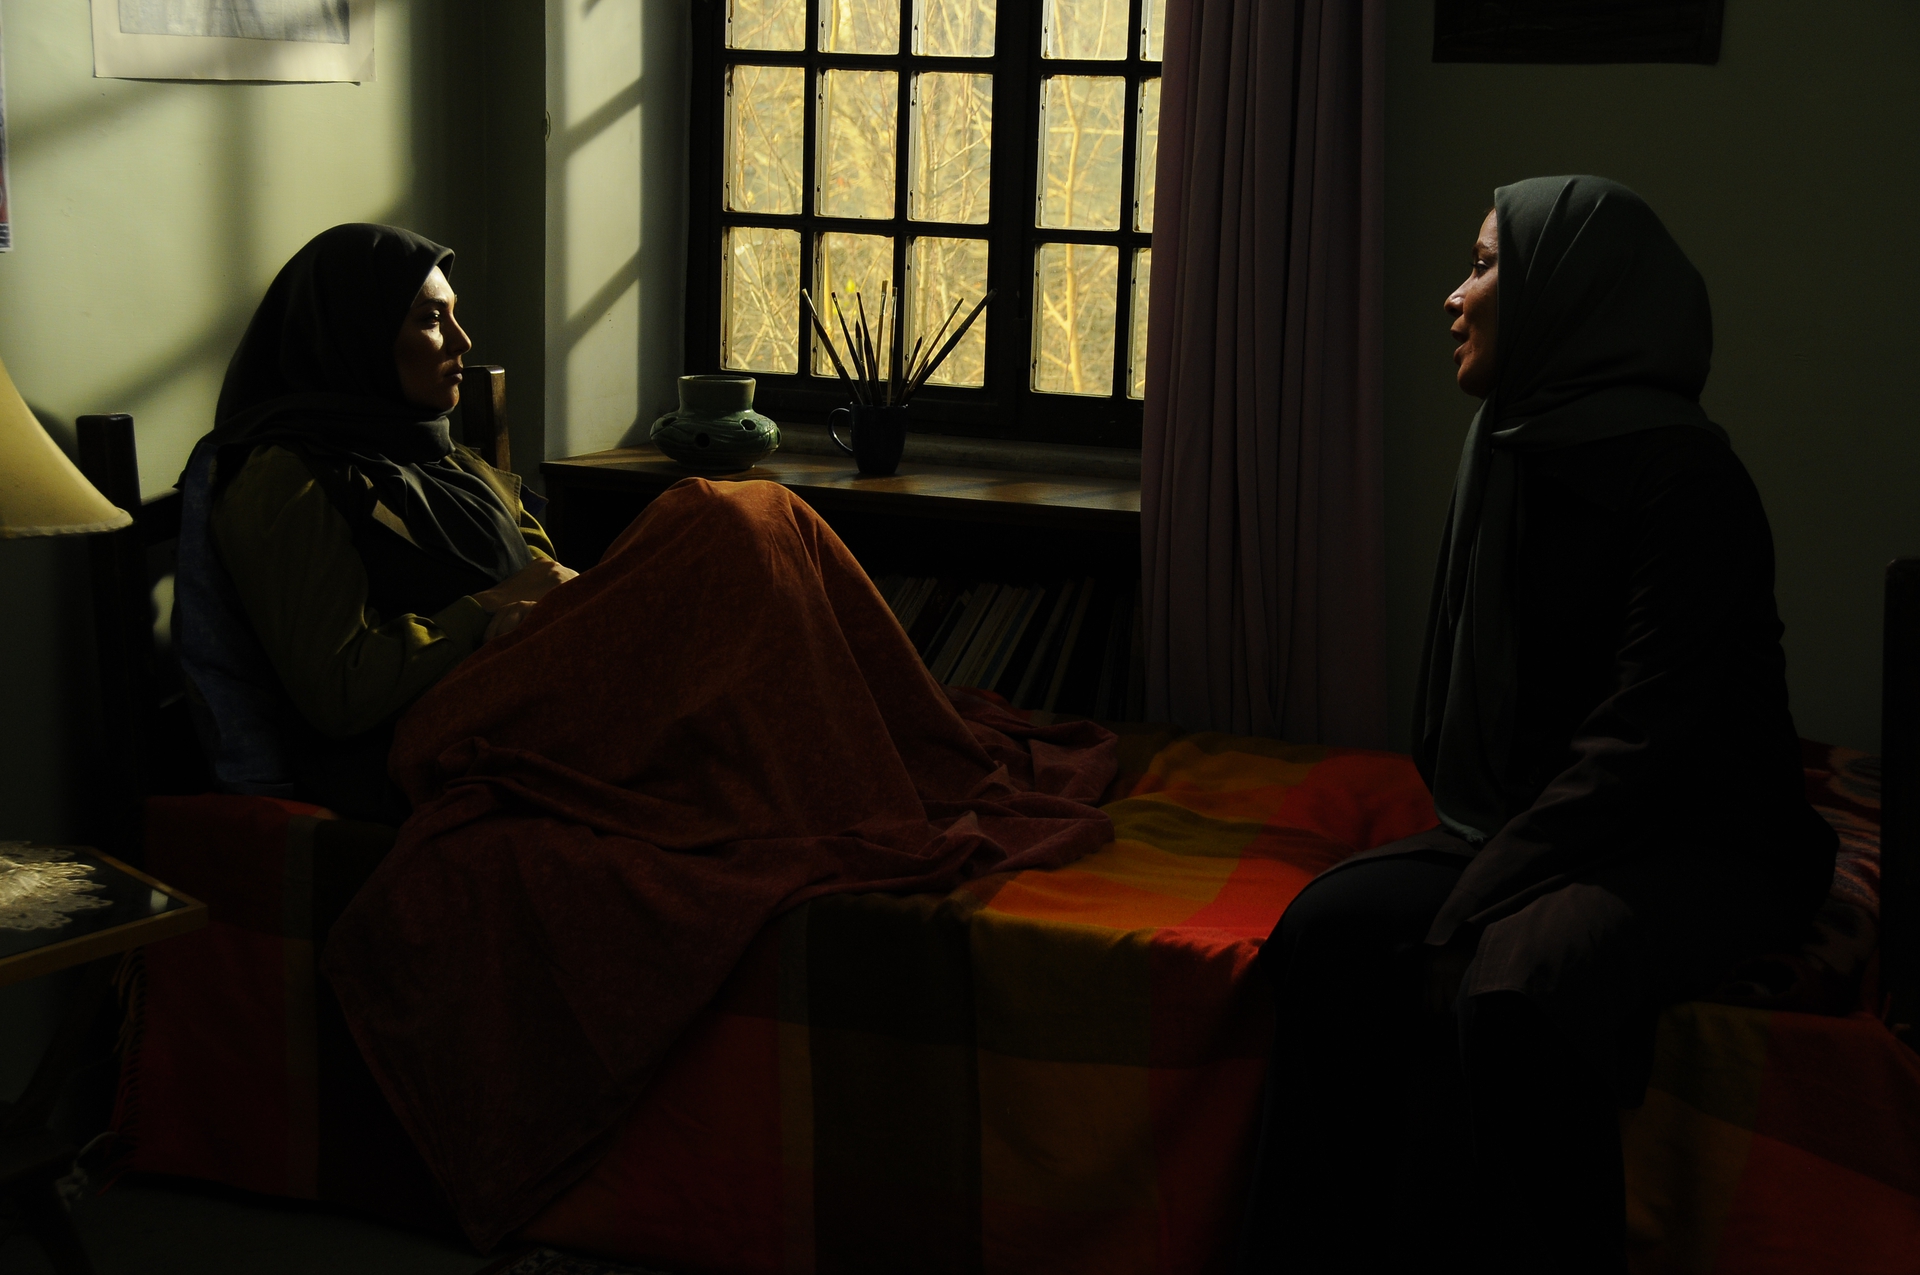 تصویری از مهتاب شکریان، بازیگر سینما و تلویزیون در حال بازیگری سر صحنه یکی از آثارش